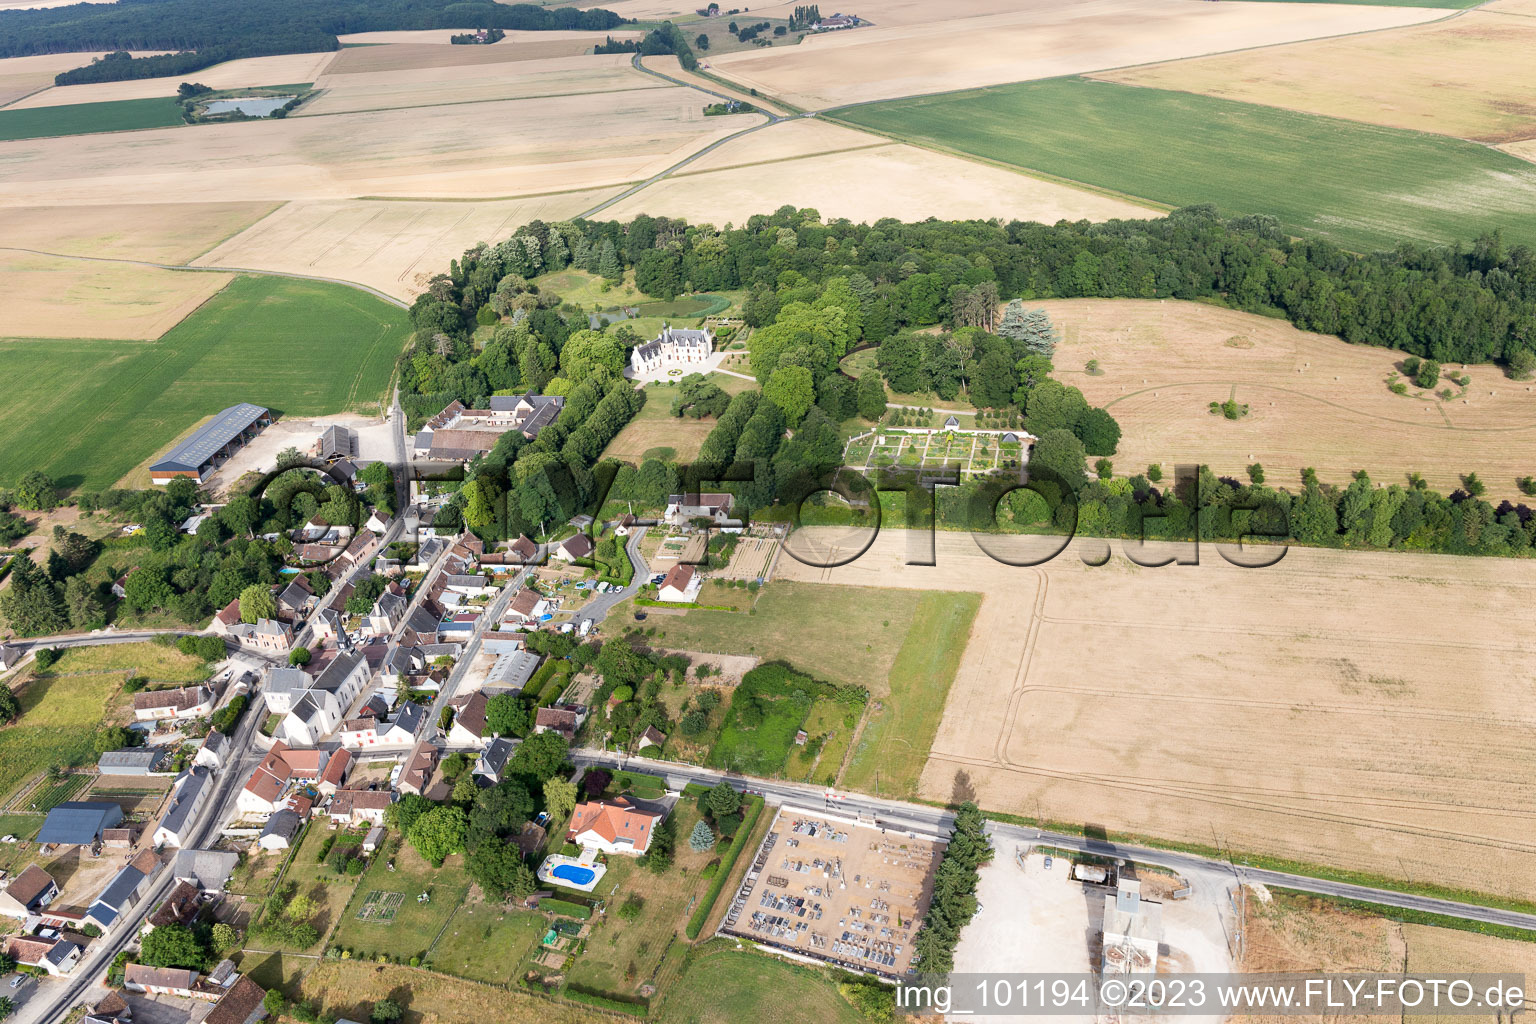 Saint-Cyr-du-Gault im Bundesland Loir-et-Cher, Frankreich von der Drohne aus gesehen